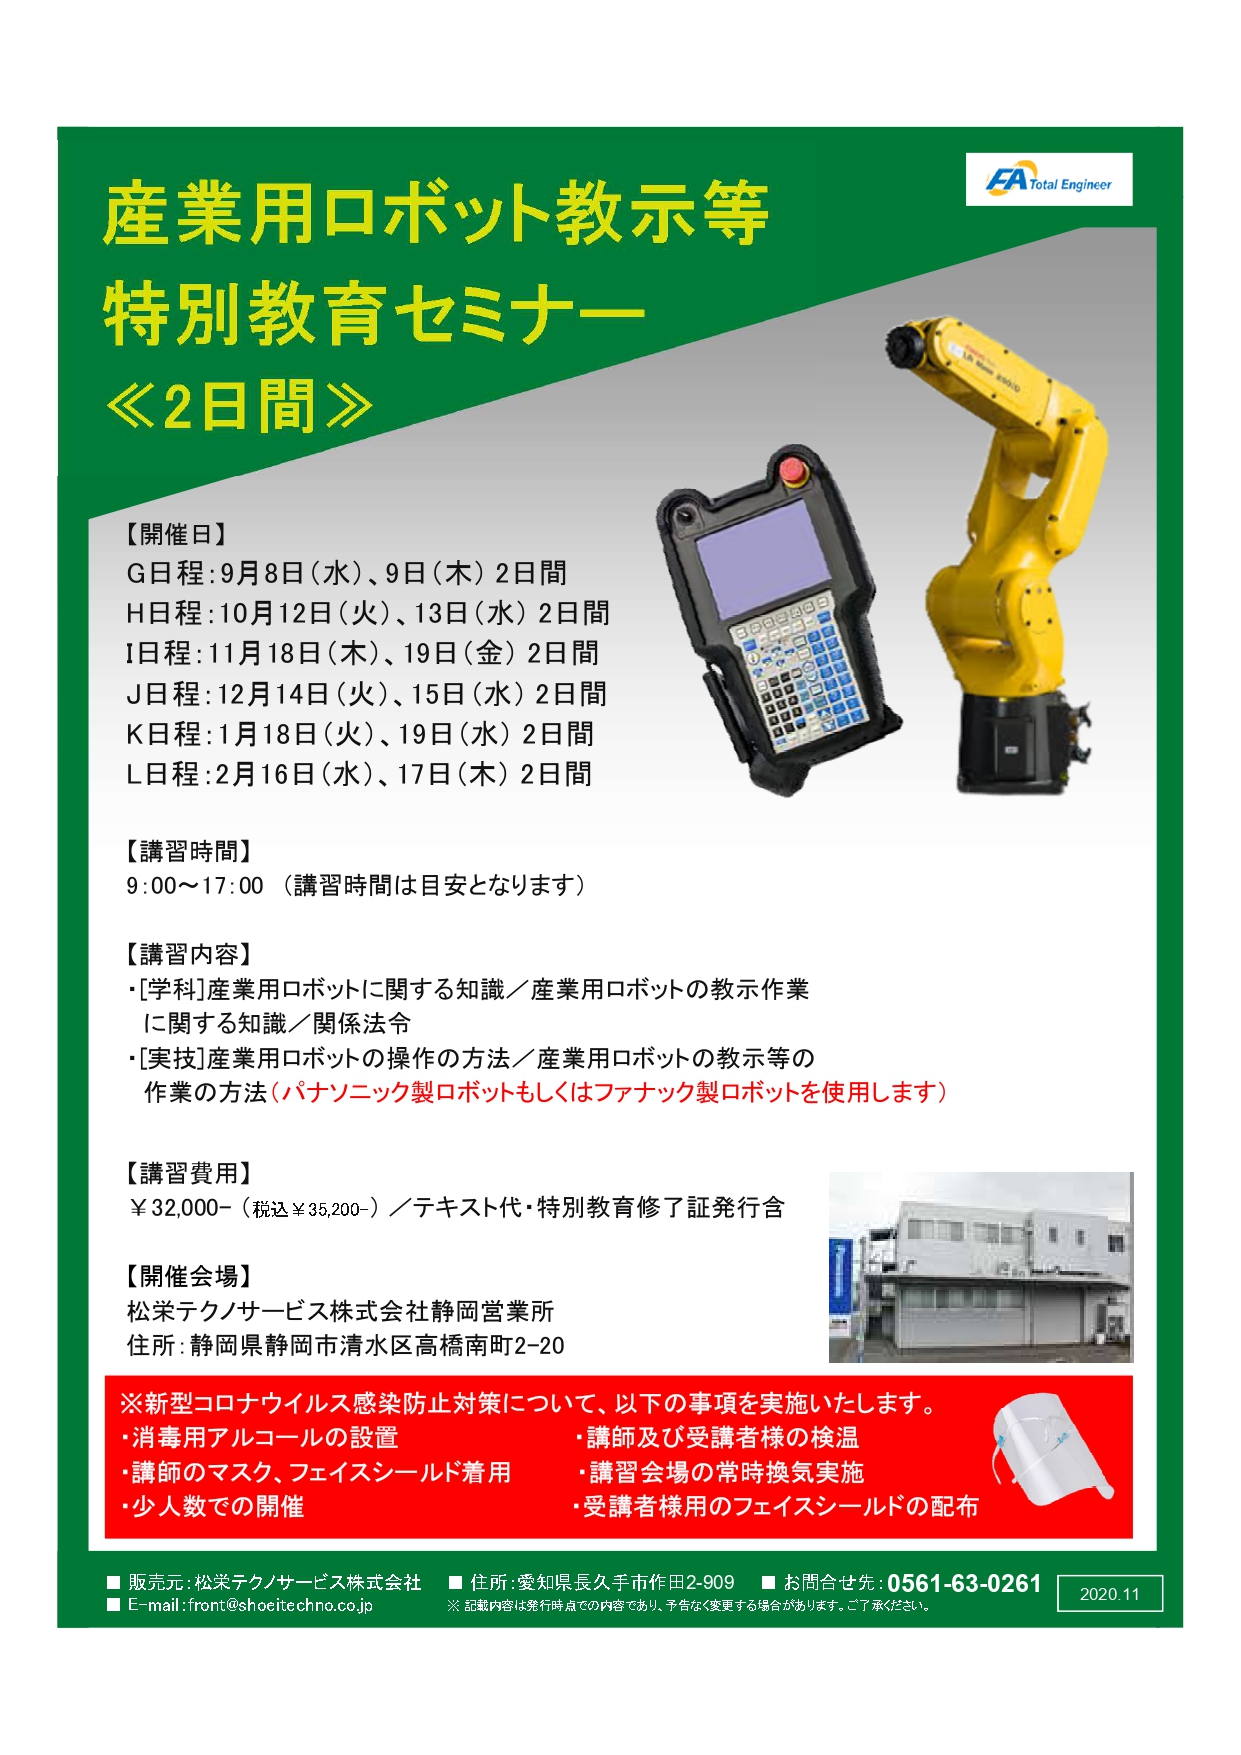 【終了しました】産業用ロボット特別教育（教示等）静岡会場開催のお知らせ【2021年9月～2022年2月】